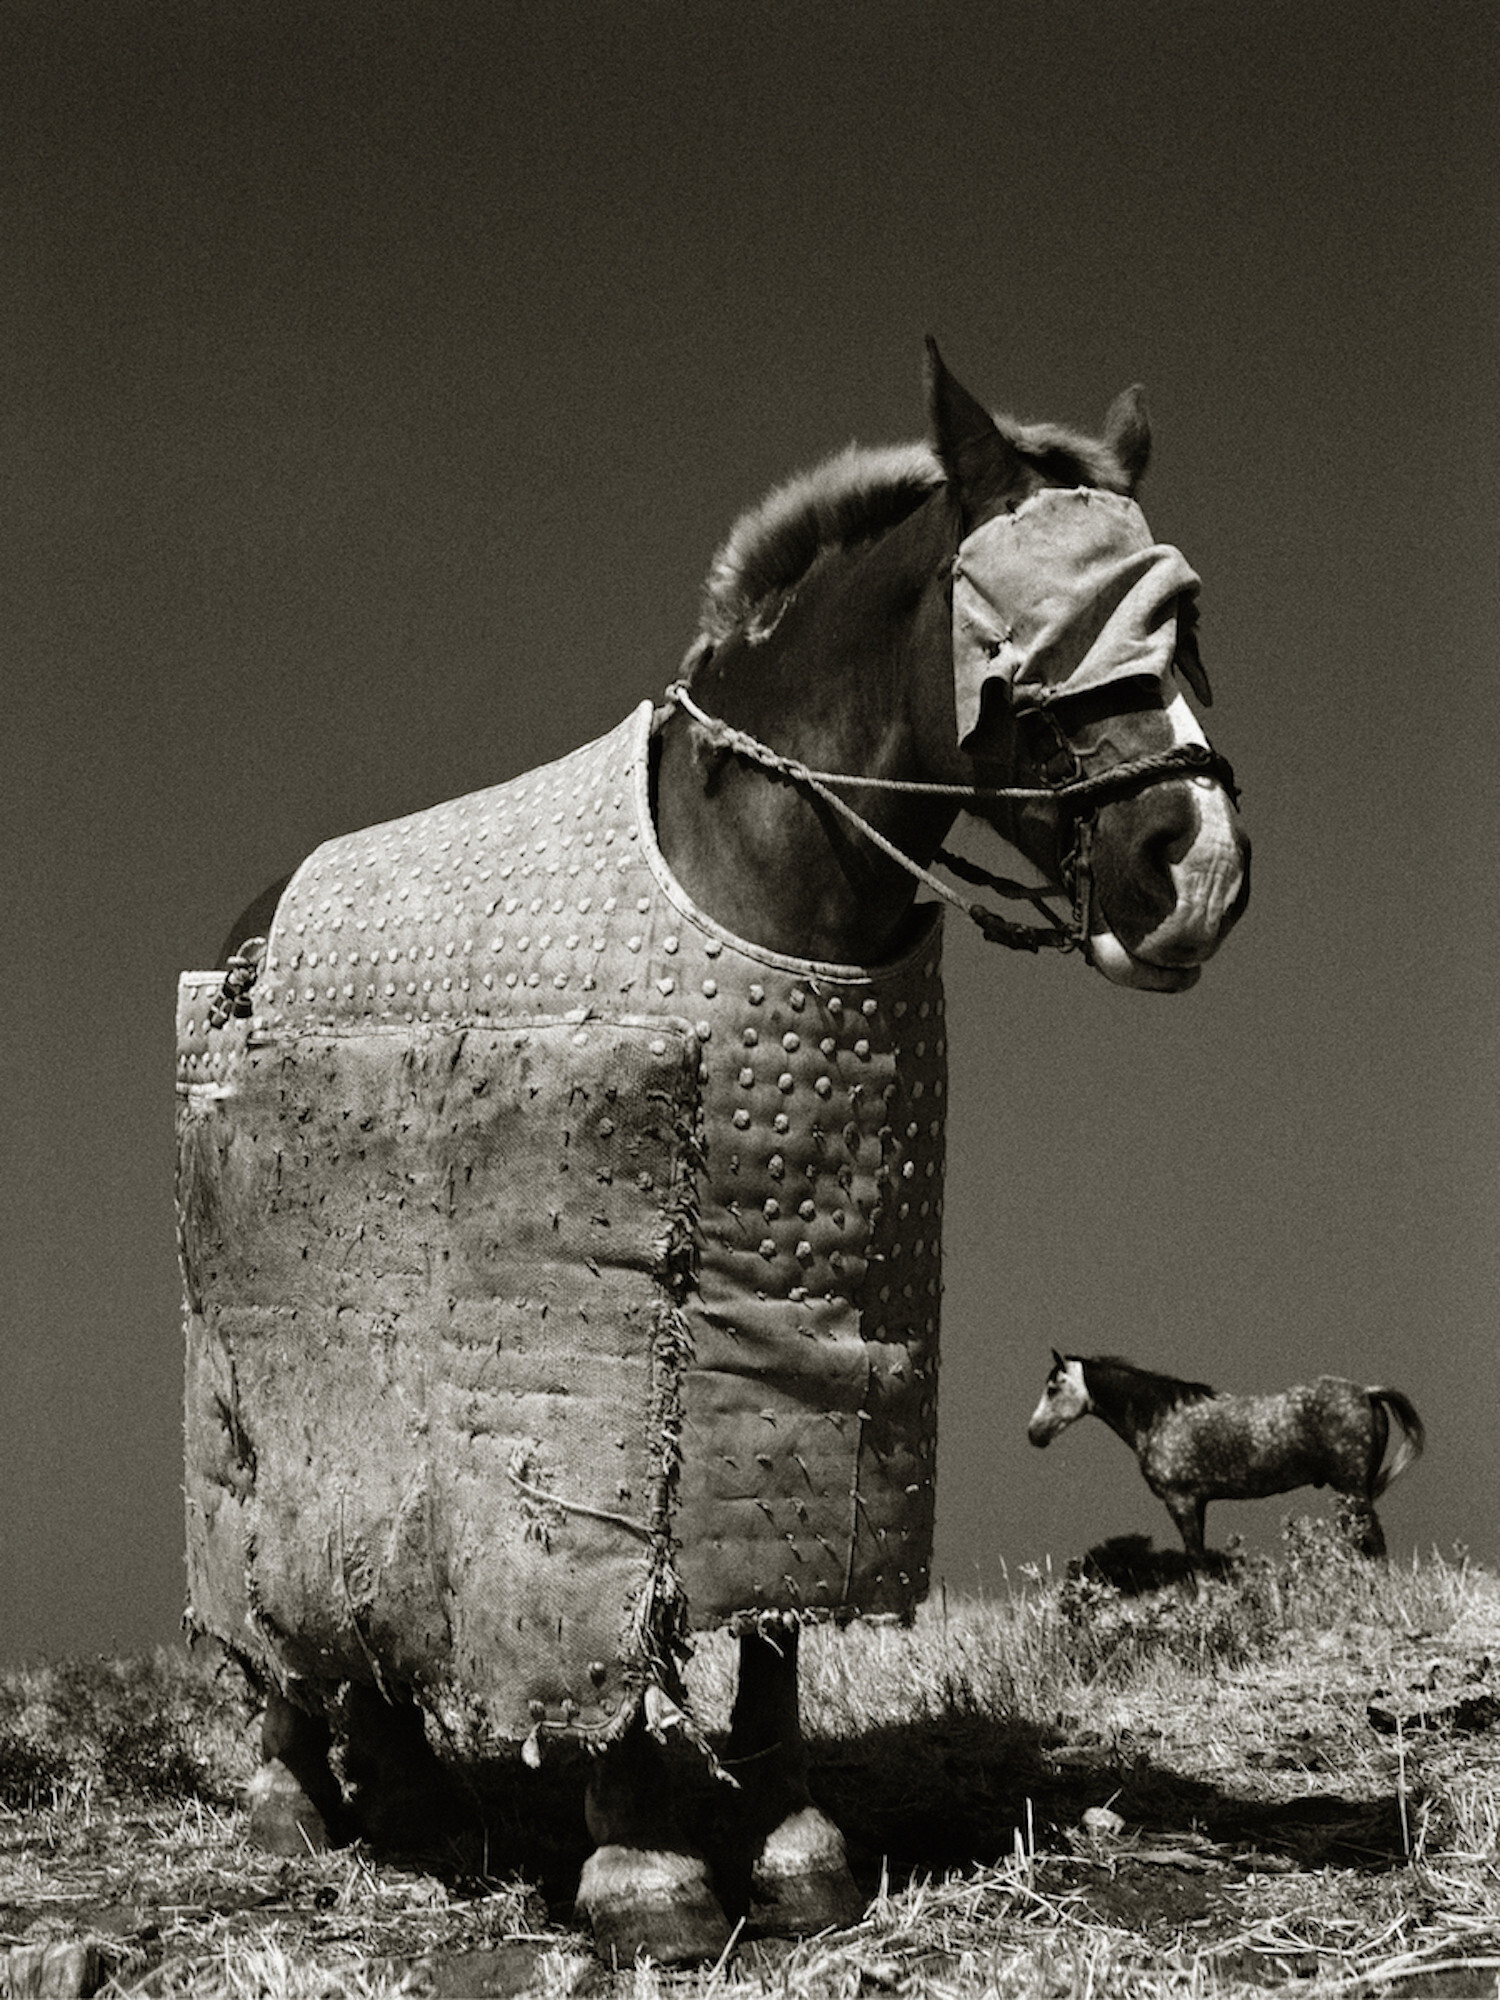 Bull-Fighting Horse, Севилья, Испания, 1986 год. Фотограф Альберт Уотсон